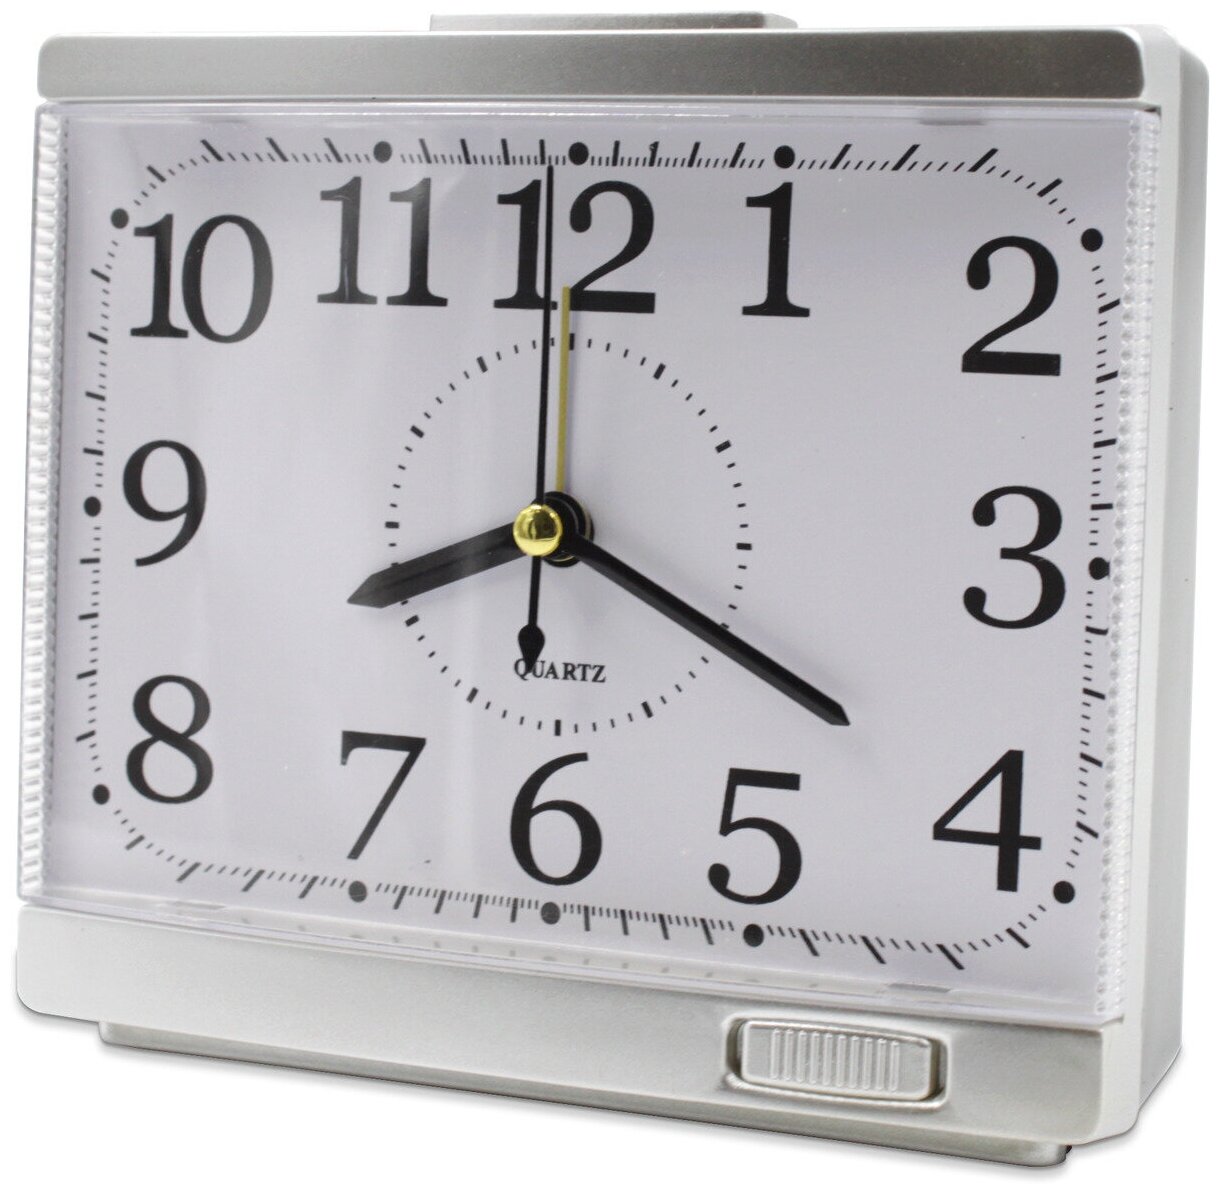 Часы-будильник Irit IR-605